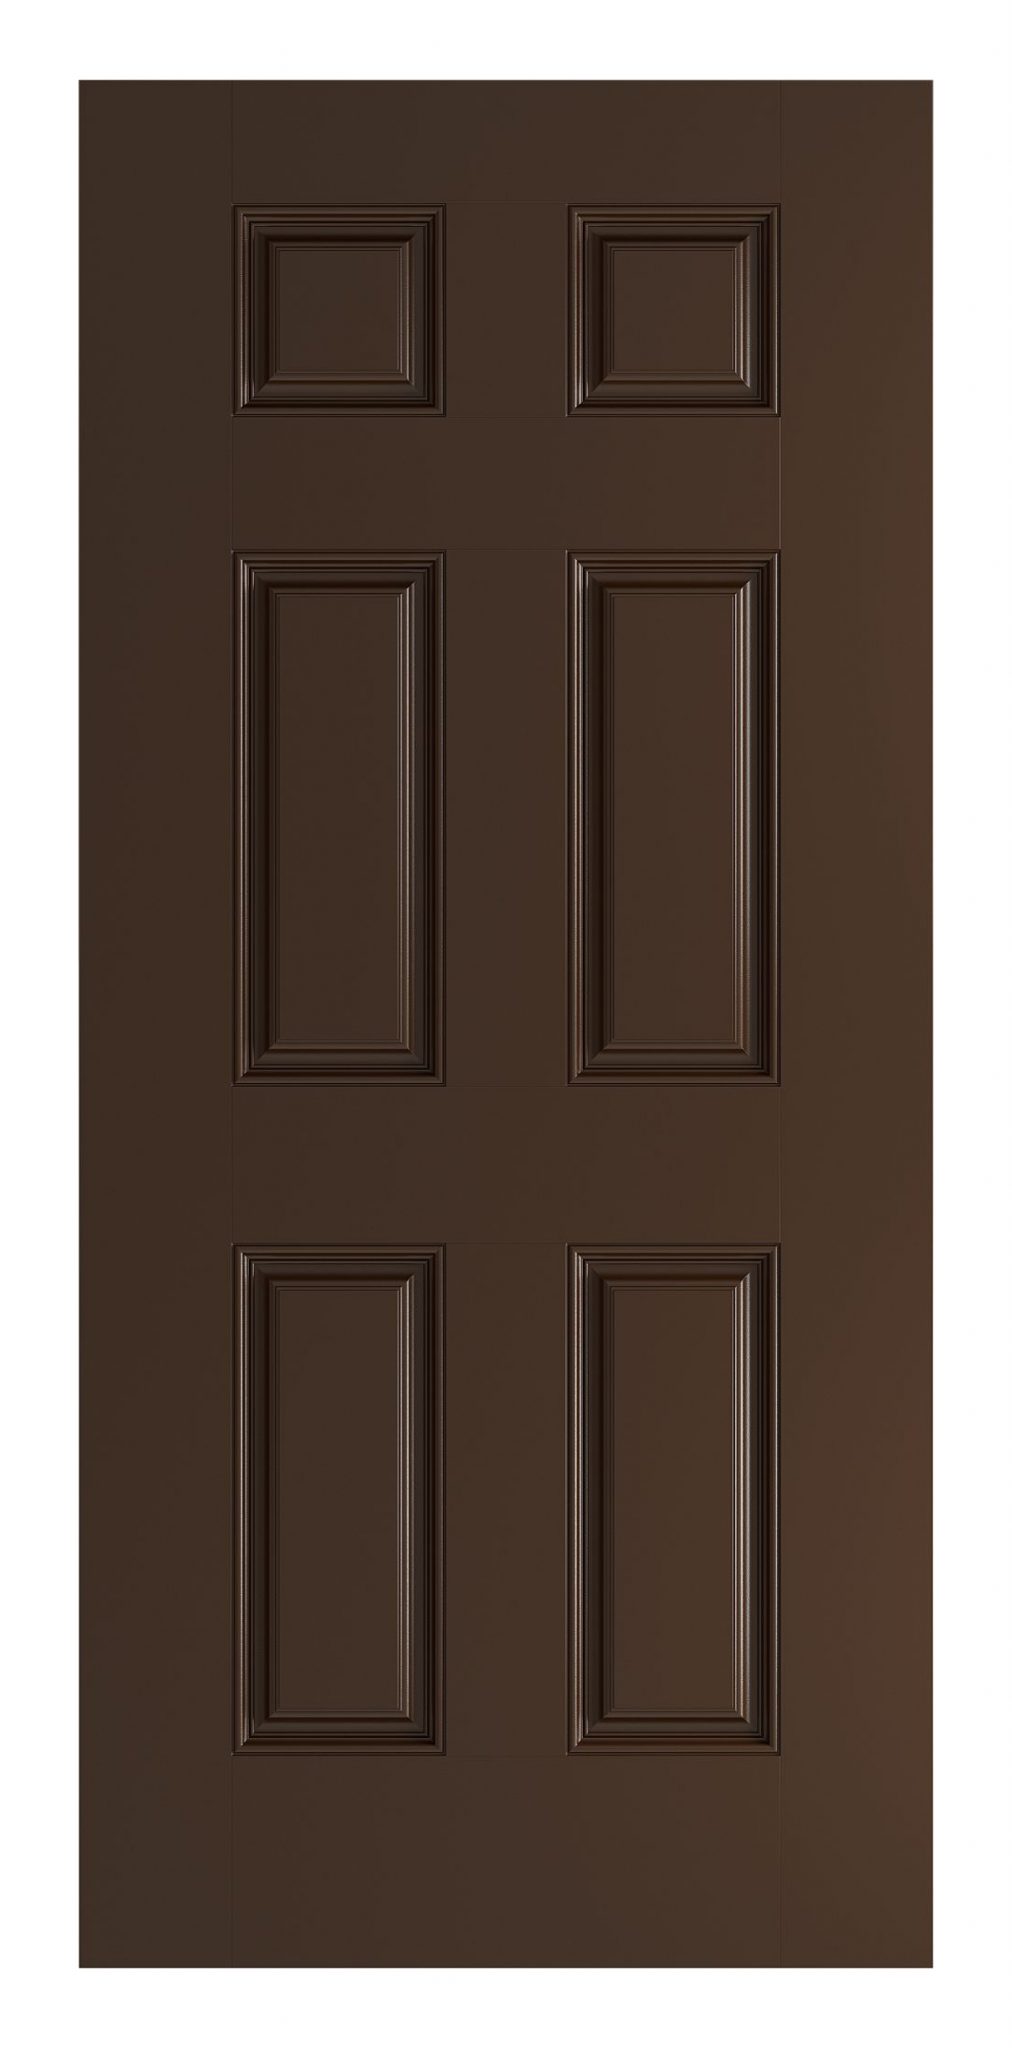 6 Panel Door in Espresso - Advisar